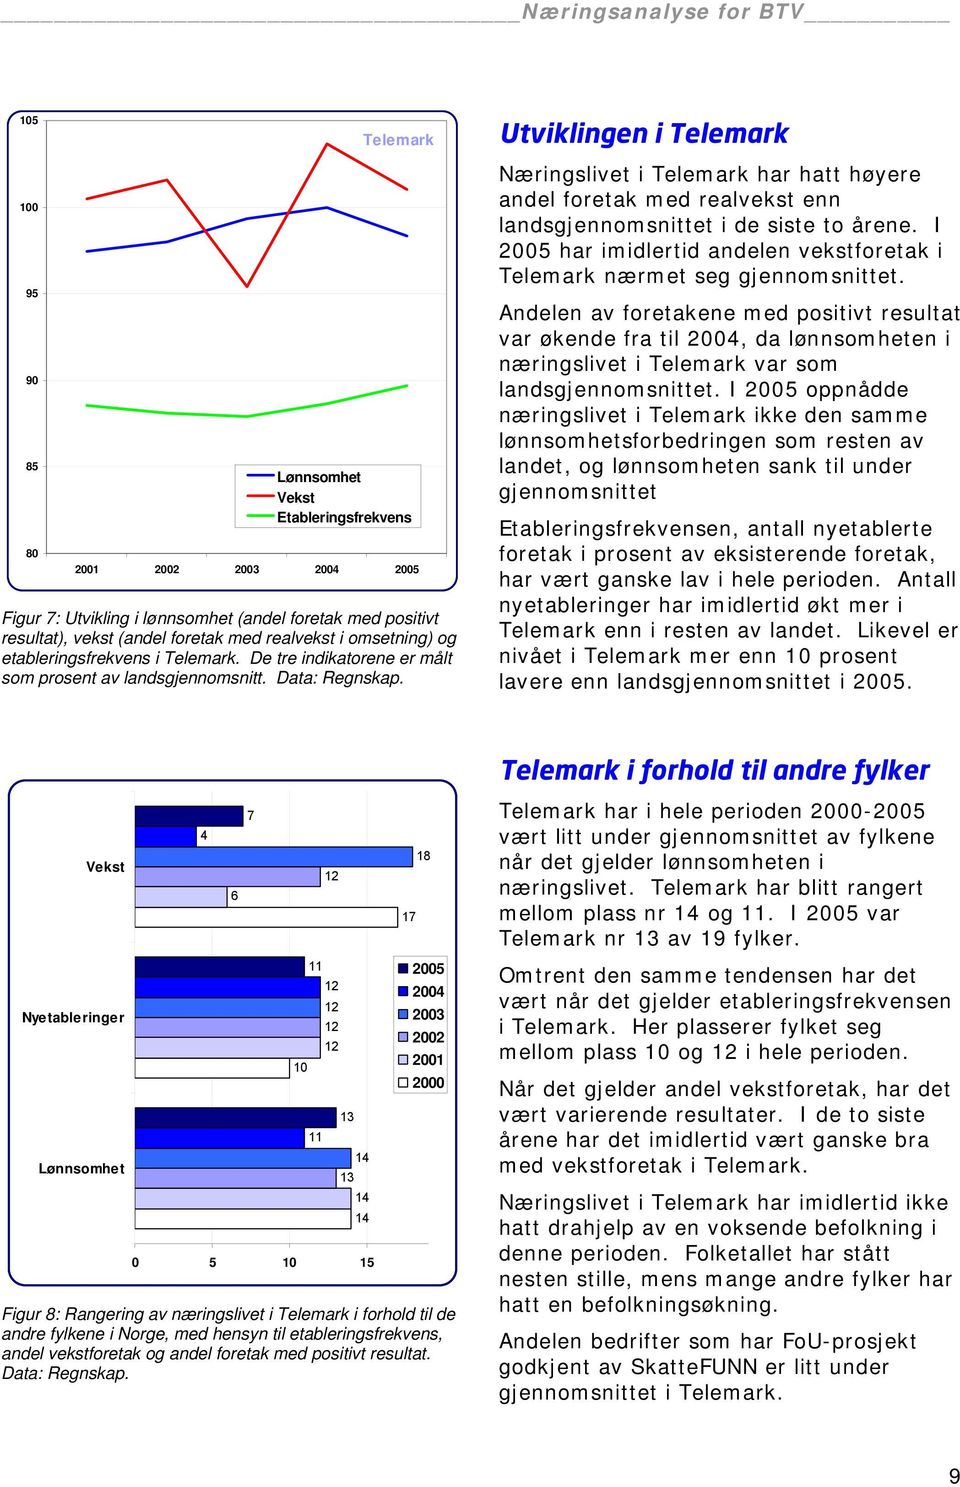 Næringslivet i Telemark har hatt høyere andel foretak med realvekst enn landsgjennomsnittet i de siste to årene. I 2005 har imidlertid andelen vekstforetak i Telemark nærmet seg gjennomsnittet.